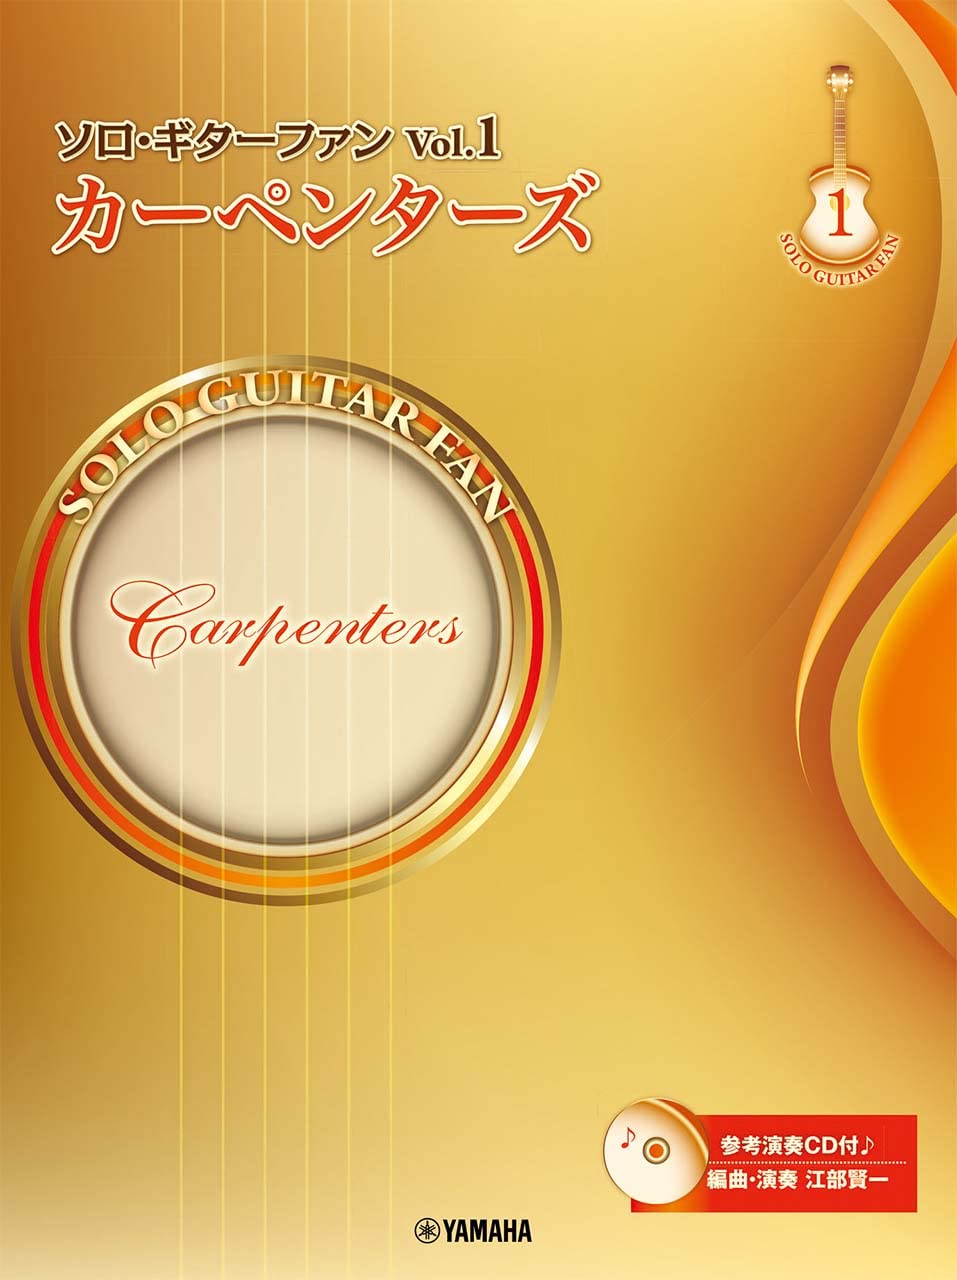 ソロ·ギタ-ファン Vol.1 カ-ペンタ-ズ【參考演奏CD付】 樂譜